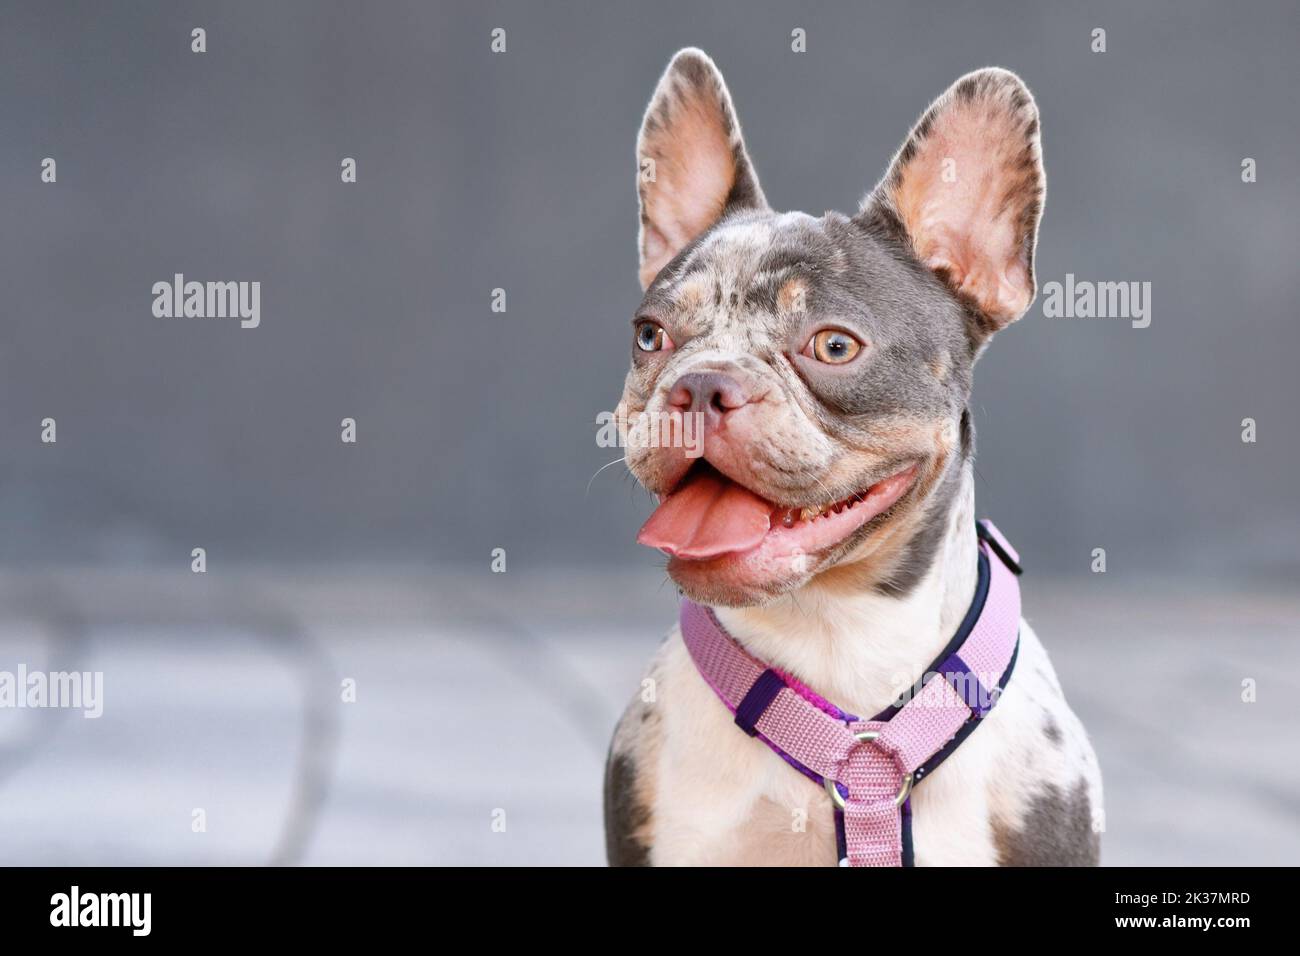 Ritratto di merle tan francese Bulldog con imbracatura per cane rosa Foto Stock